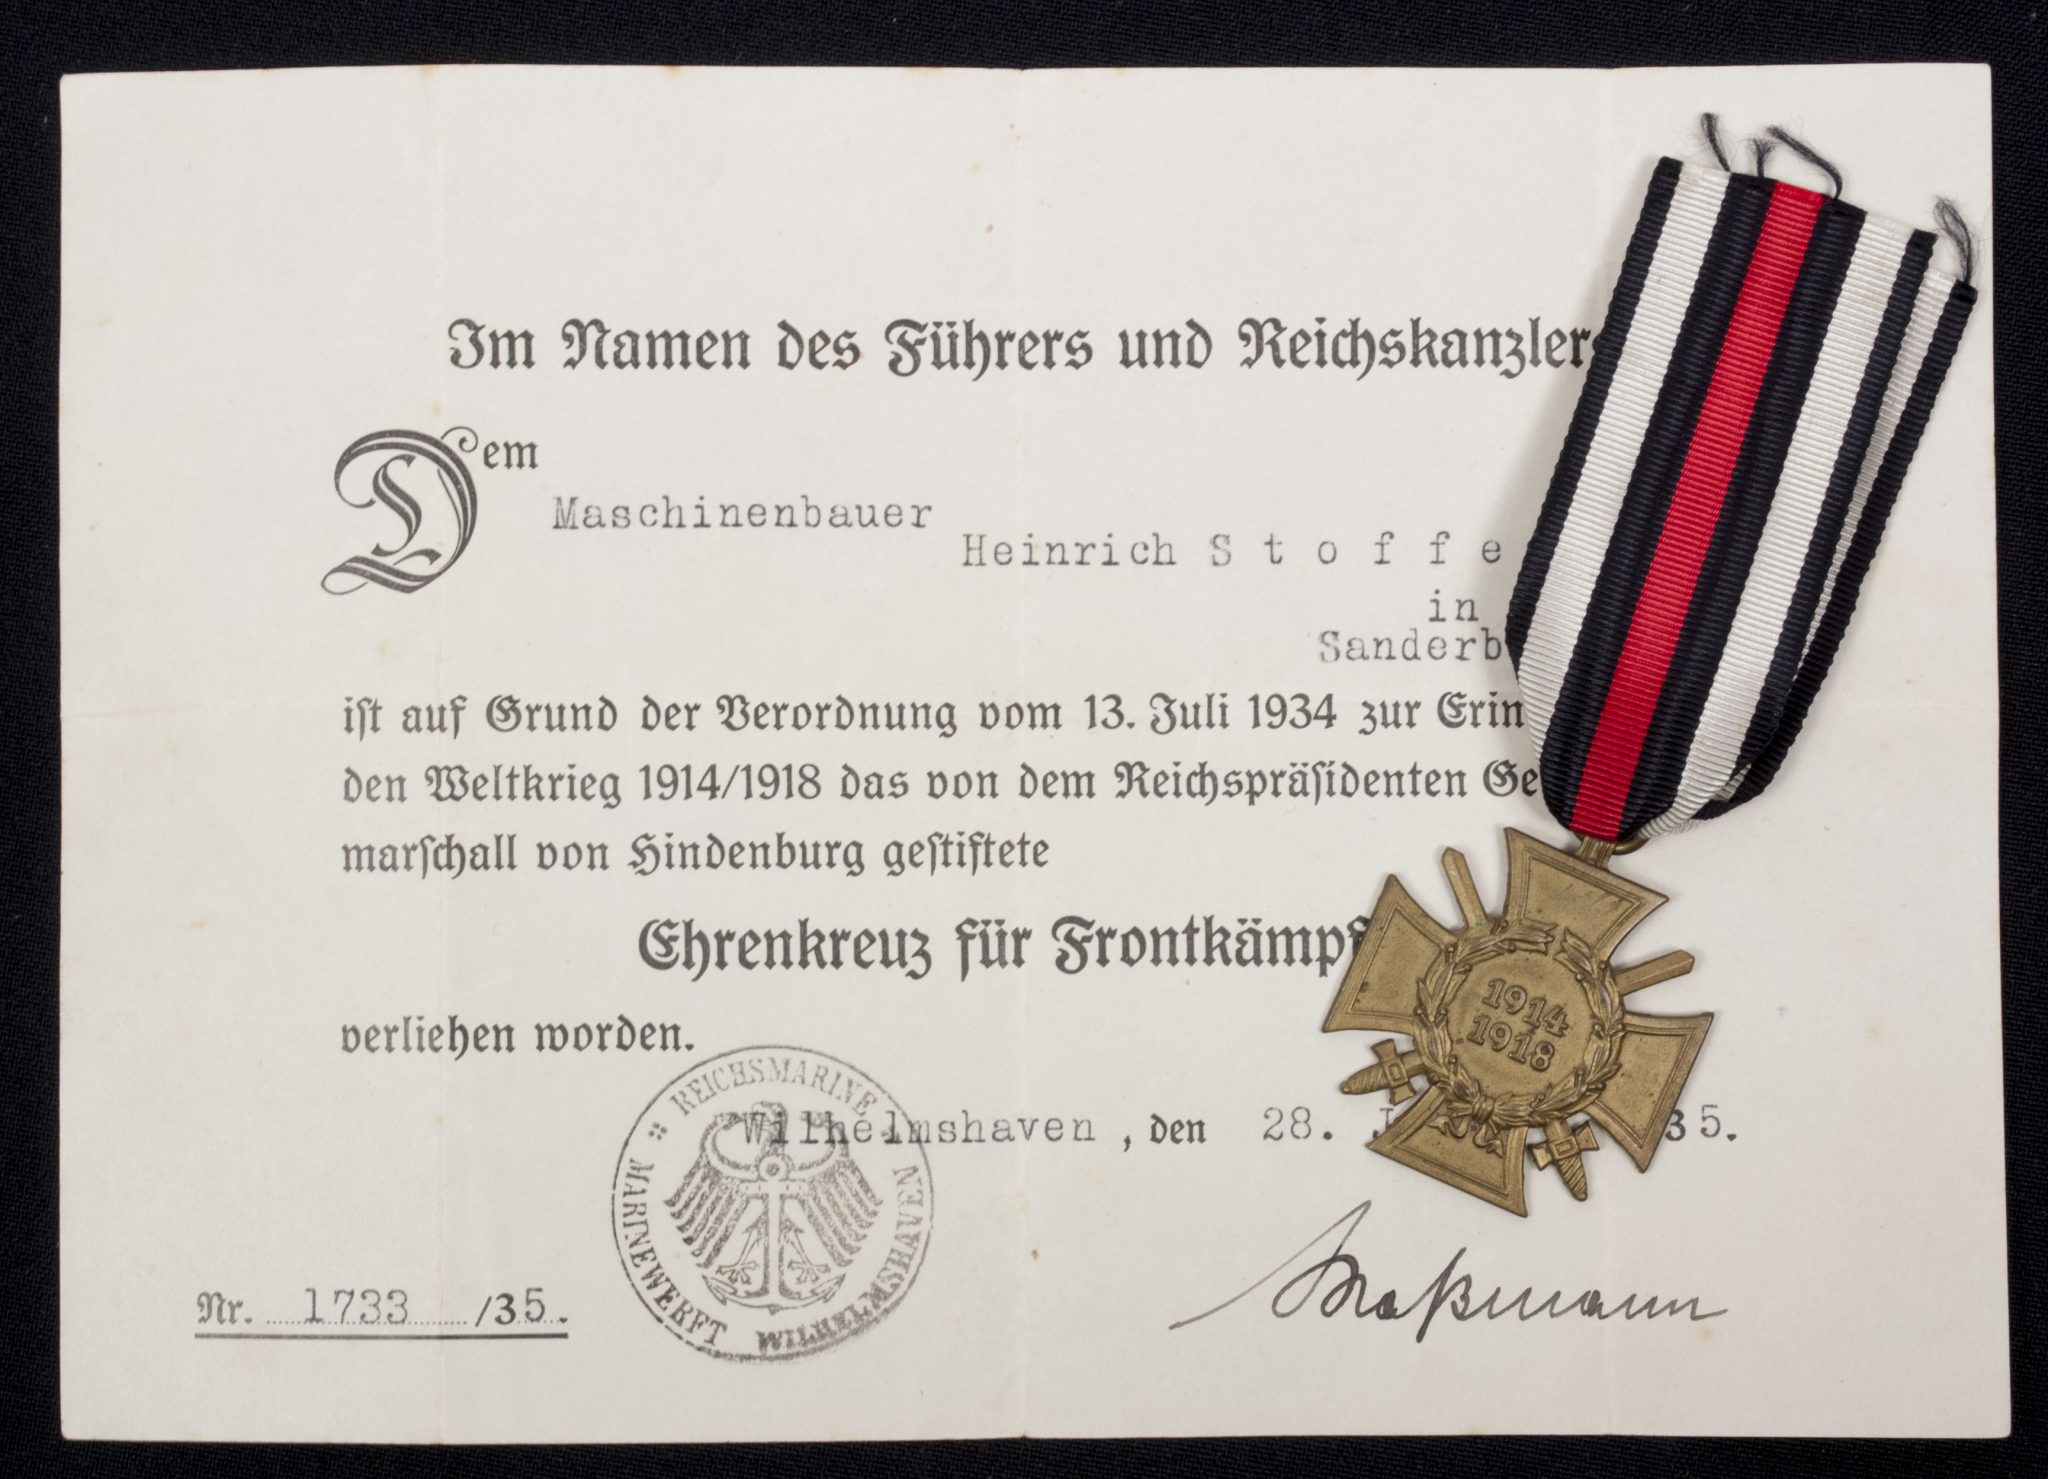 Ehrenkreuz für Frontkämpfer + citation (Sanderbusch)